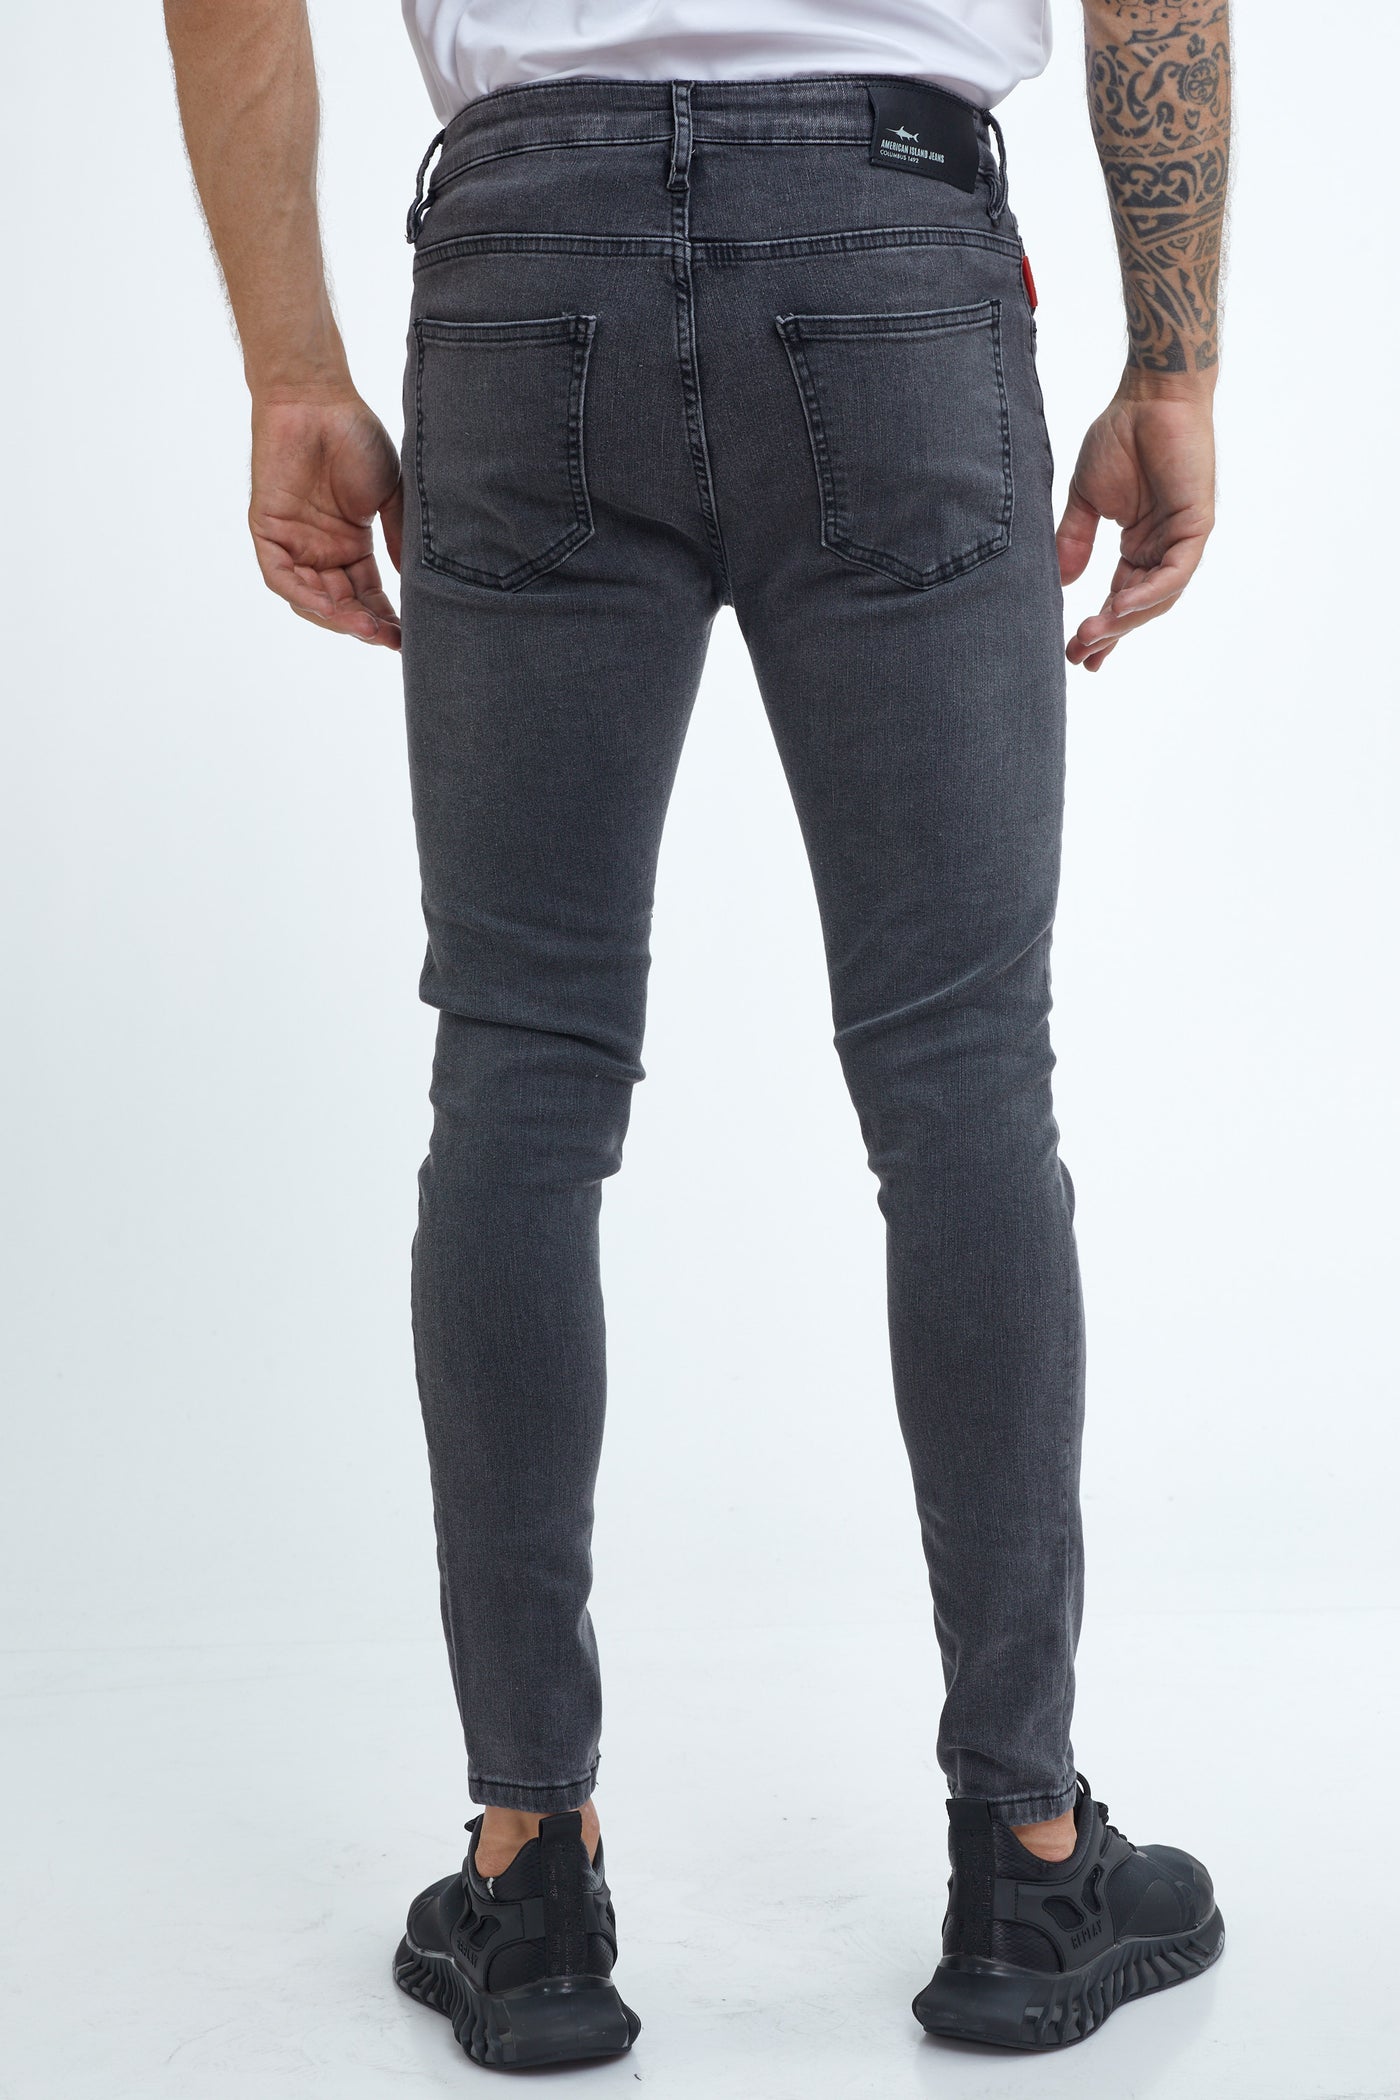 146 מכנס ג'ינס סקיני שחור